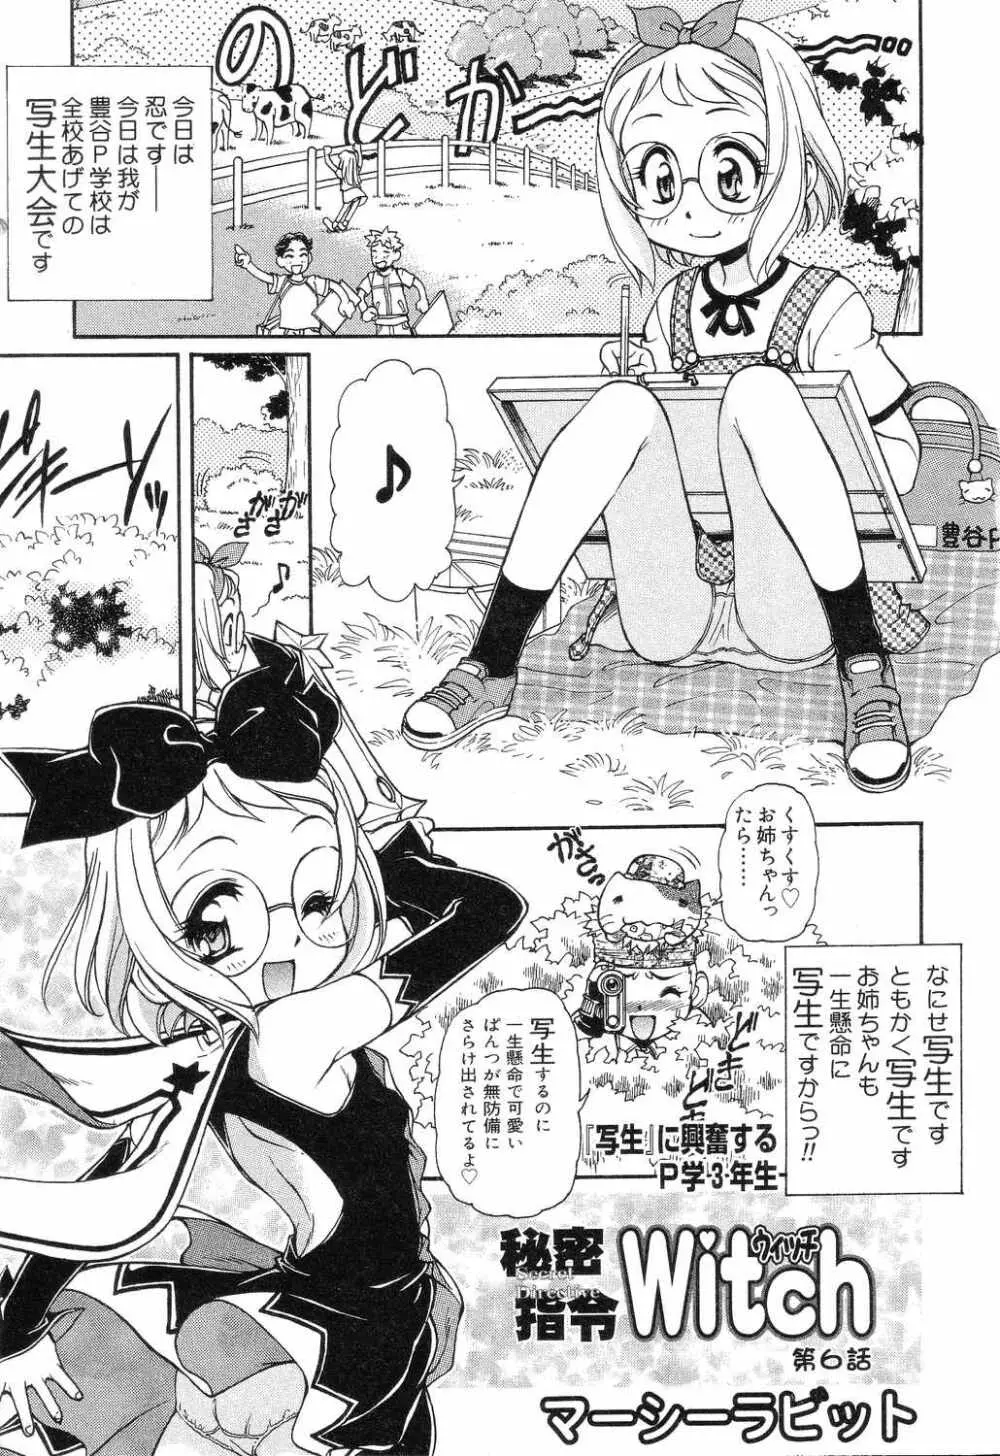 X Mitsu Shirei Witch 1-9 37ページ